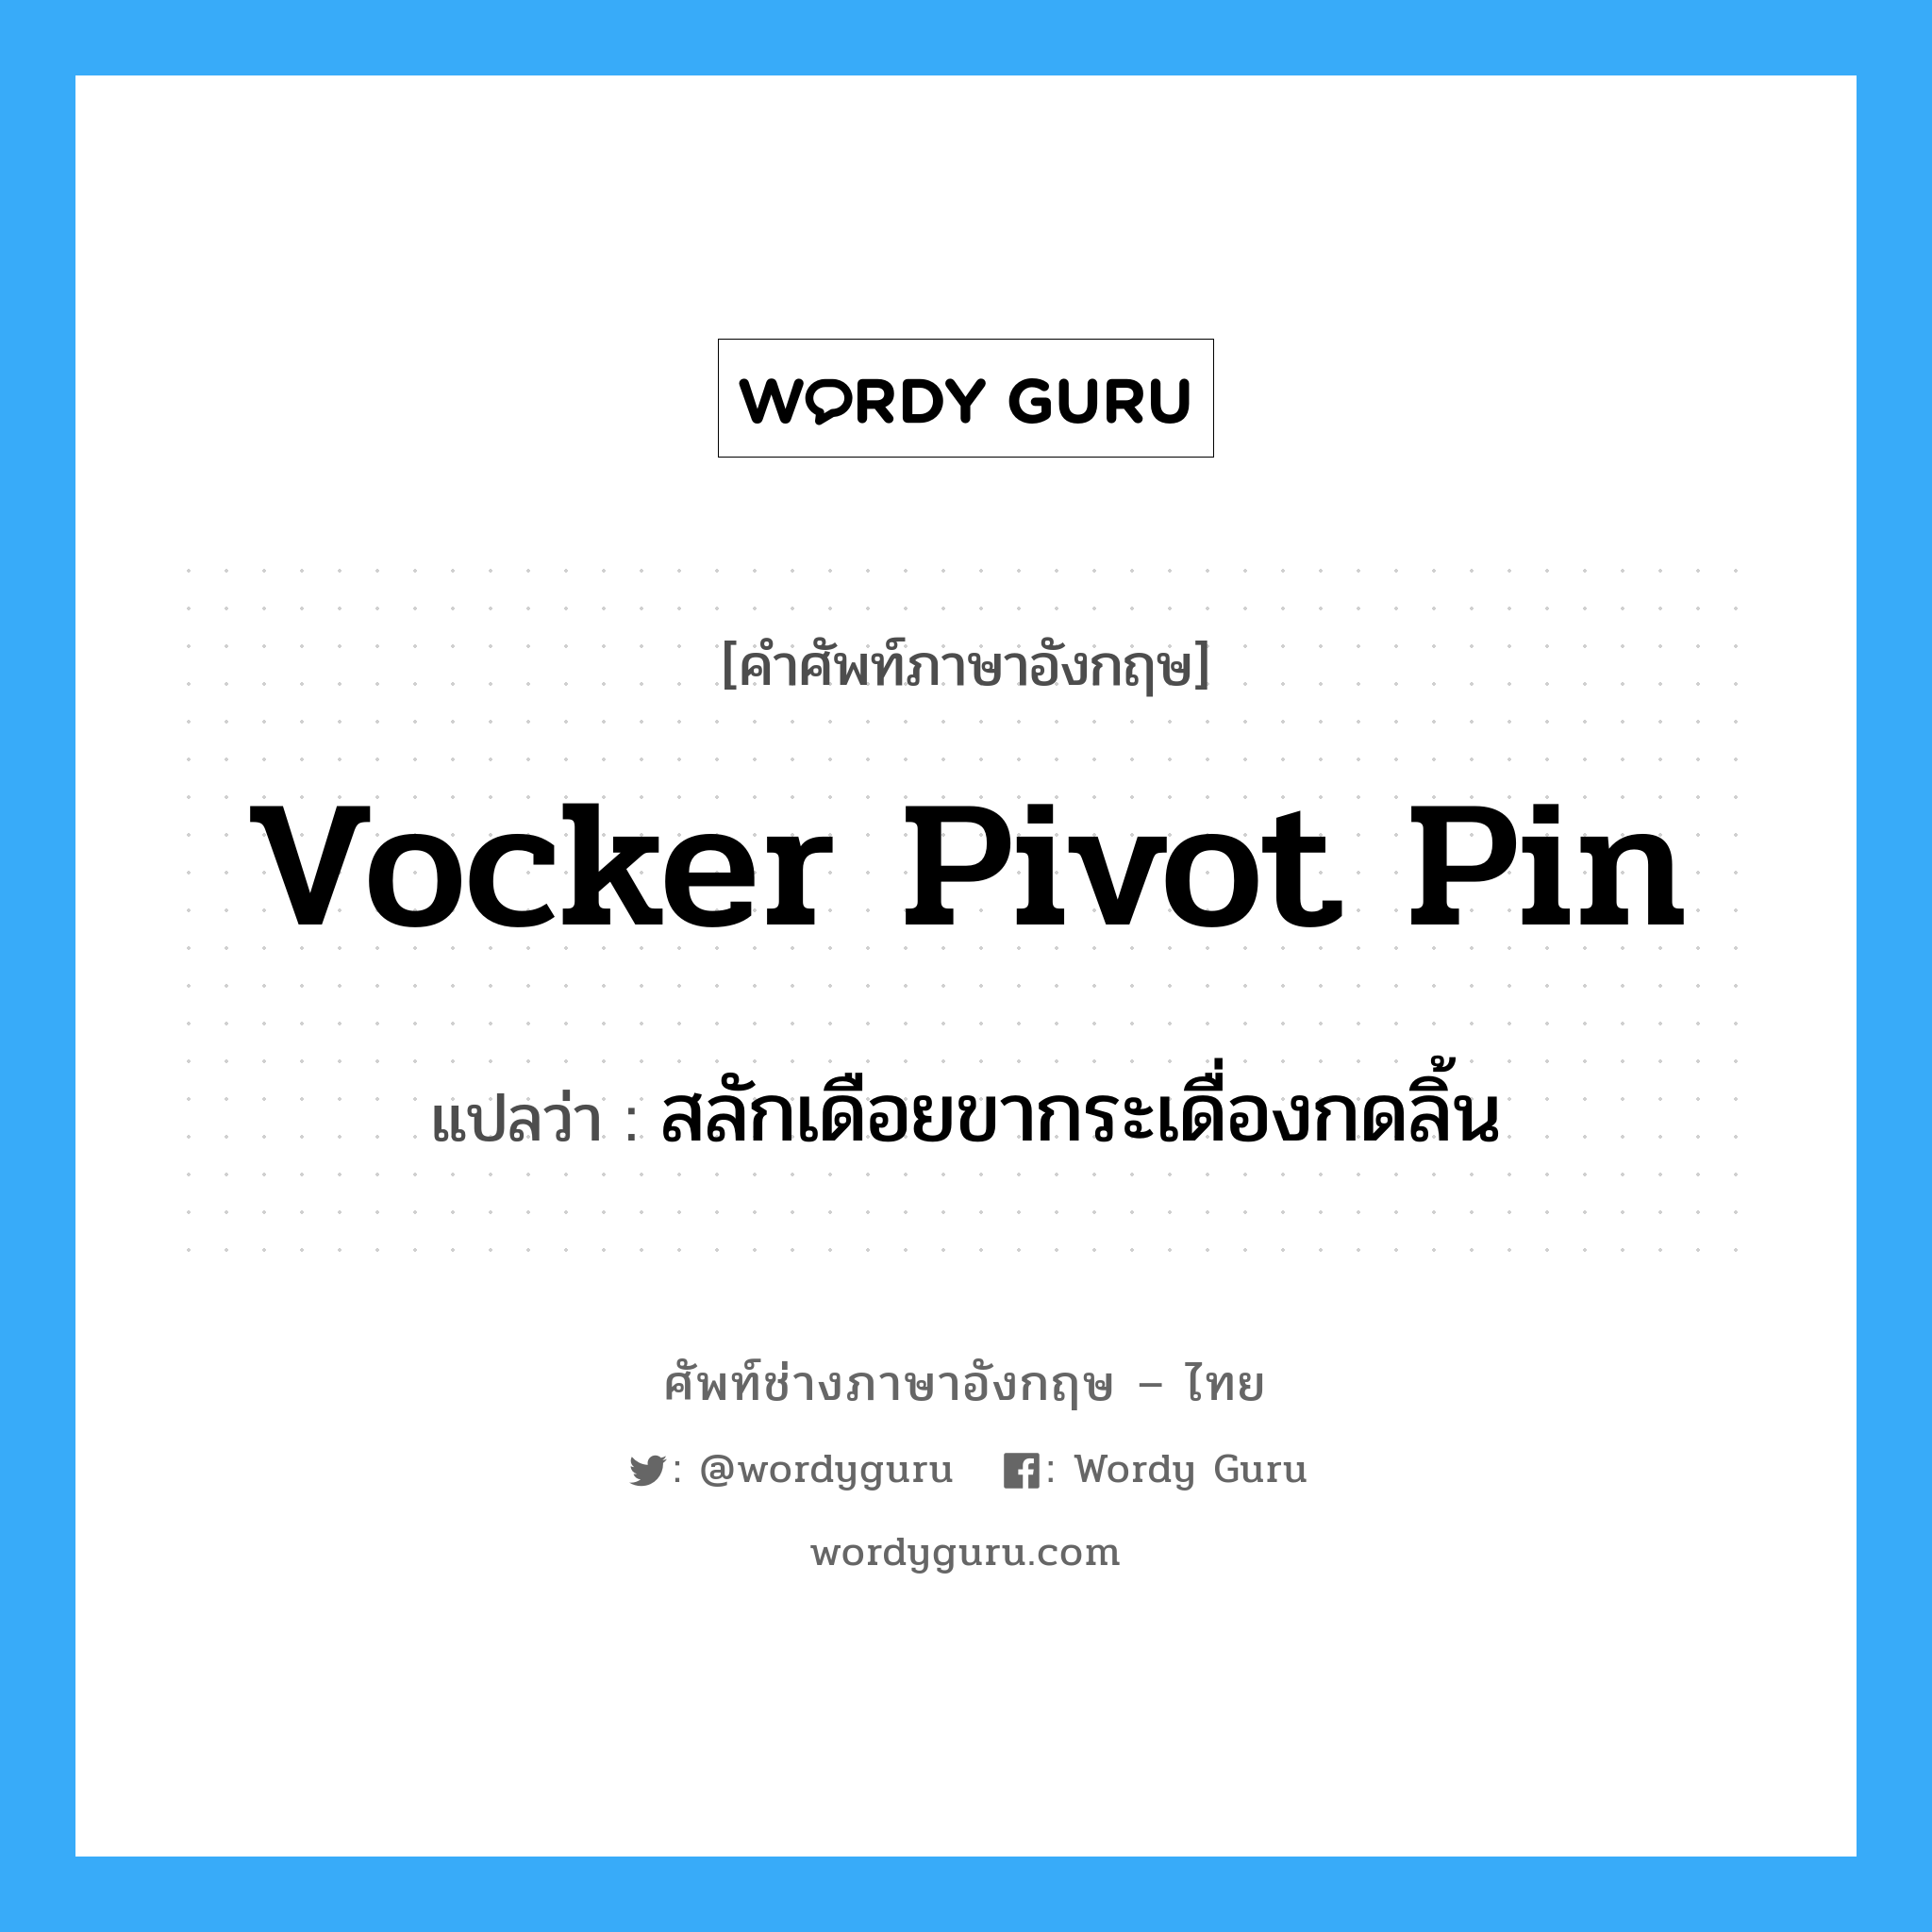 vocker pivot pin แปลว่า?, คำศัพท์ช่างภาษาอังกฤษ - ไทย vocker pivot pin คำศัพท์ภาษาอังกฤษ vocker pivot pin แปลว่า สลักเดือยขากระเดื่องกดลิ้น